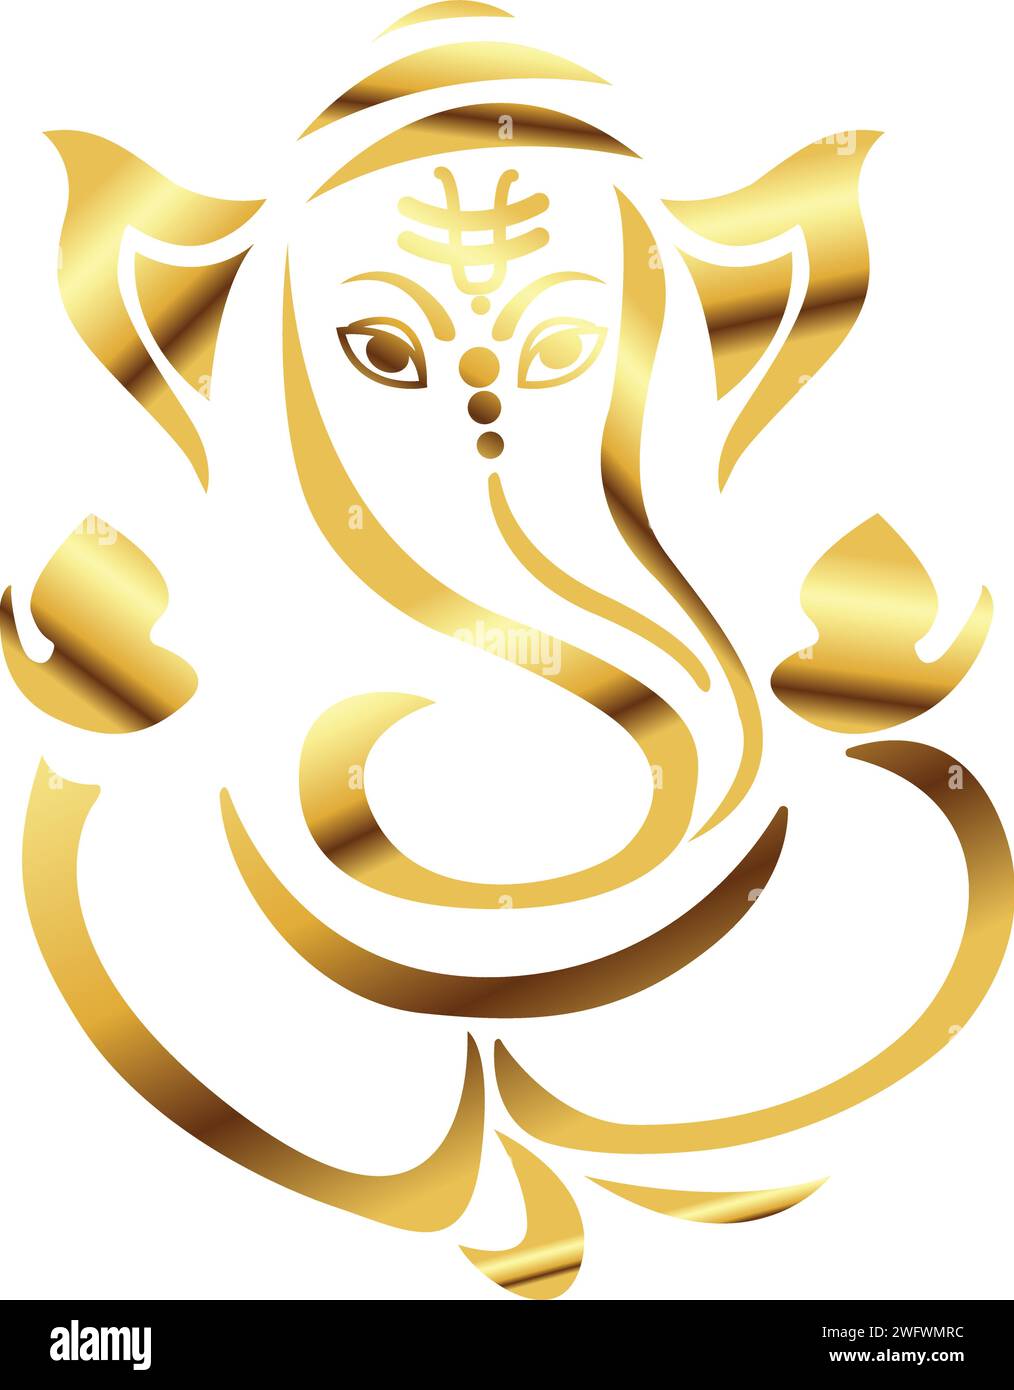 Lord ganesha illustration vectorielle, Ganesh chaturthi, Ganesh icône en or, Golden Ganesh ji, carte de voeux Seigneur Ganpati, festivals et décoratifs Illustration de Vecteur